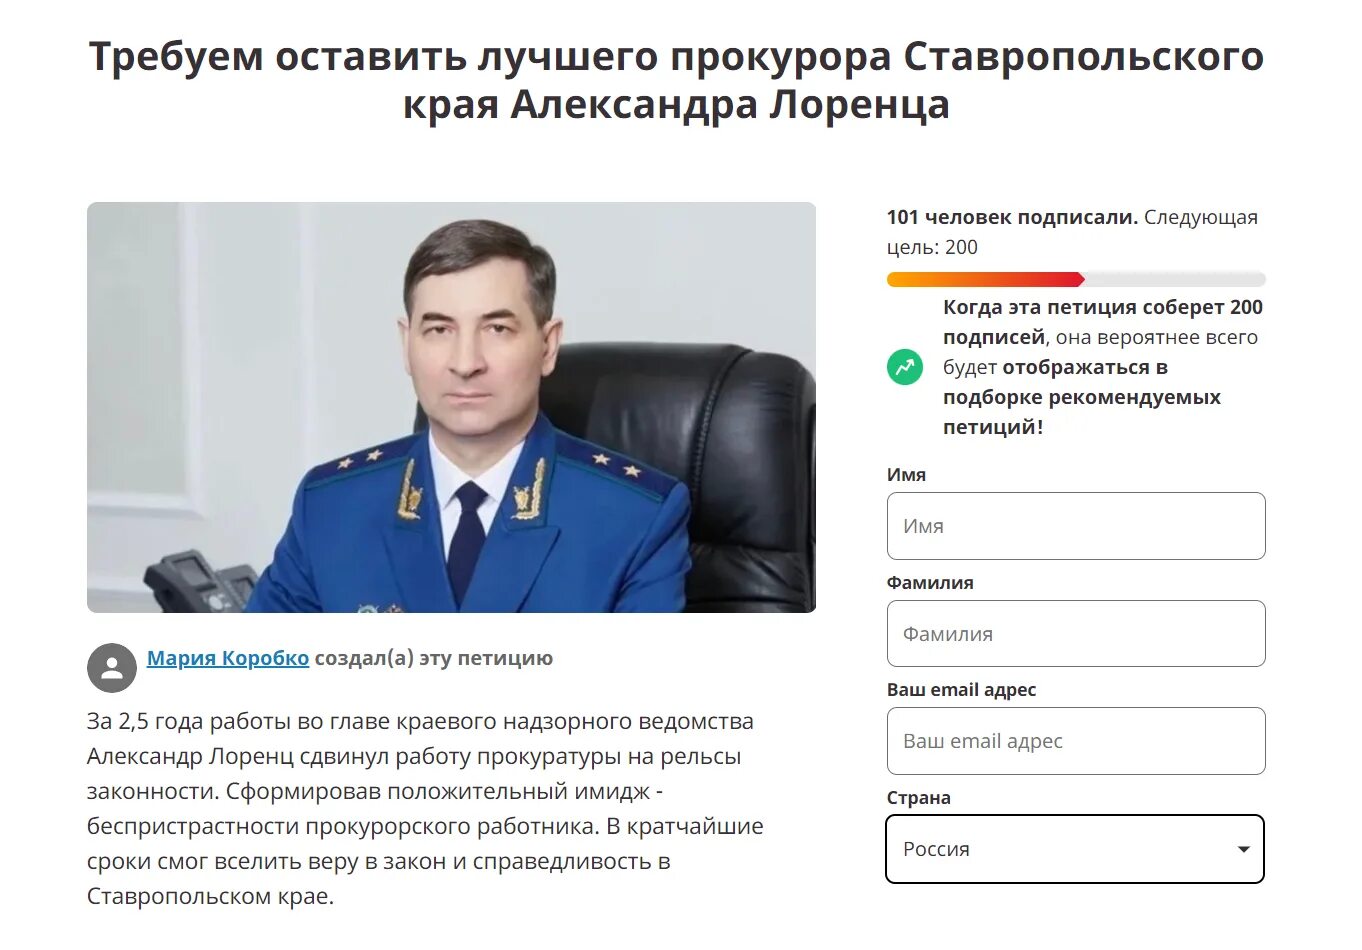 Какую должность занимает артак с 2016. Лоренц прокурор Ярославской области.